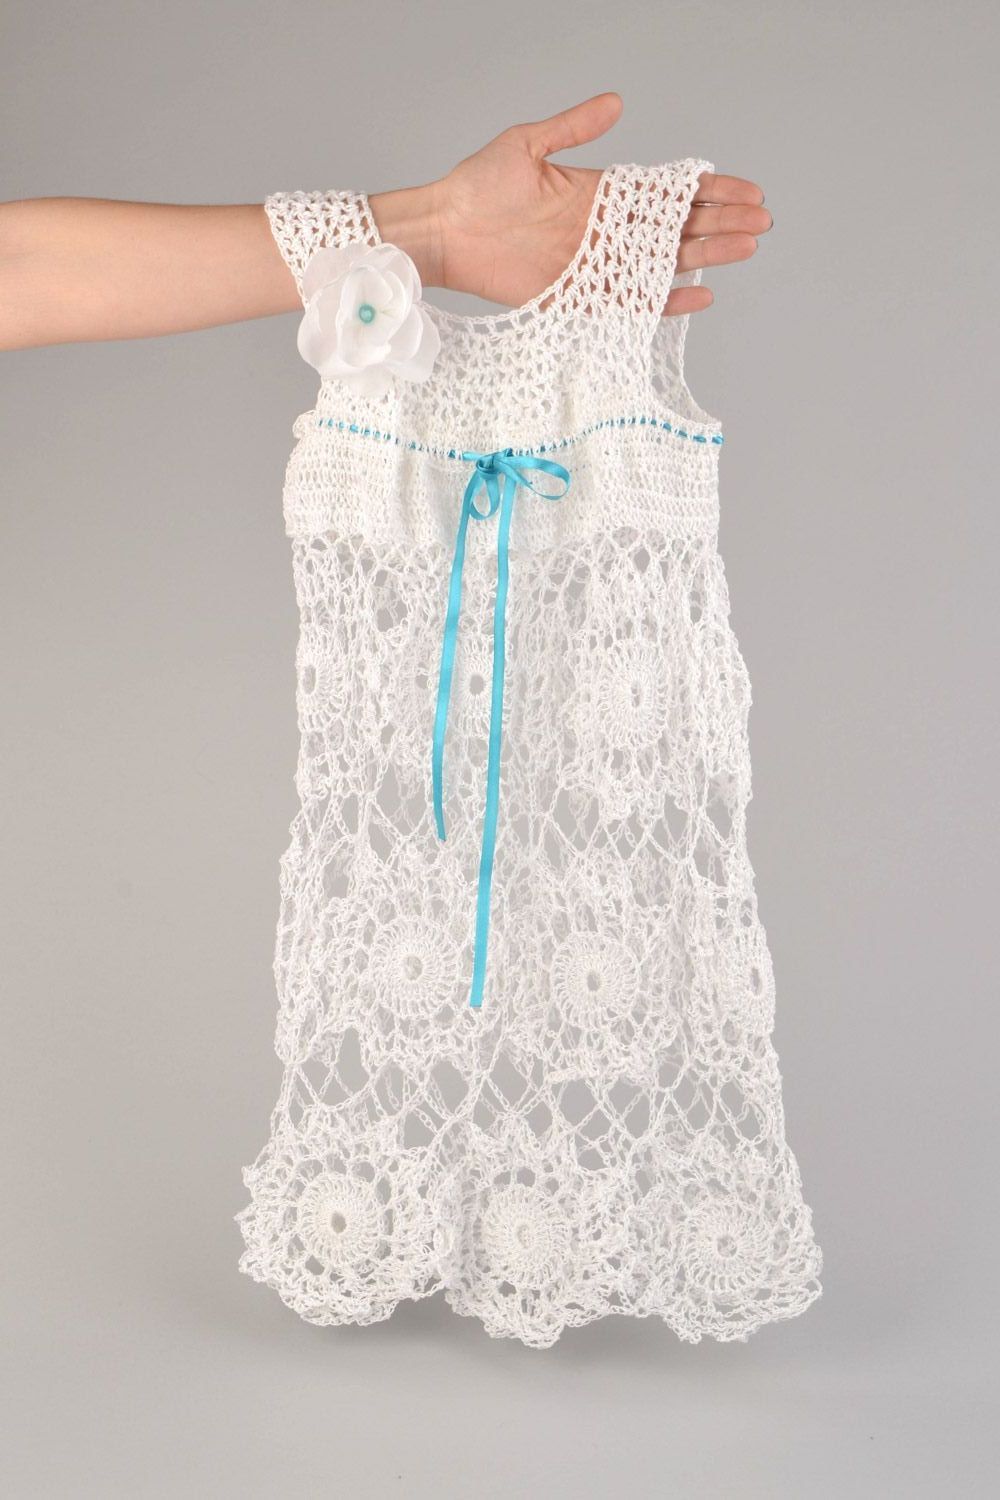 Robe tricotée pour bébé acryliques au crochet blanche ajourée faite main photo 1